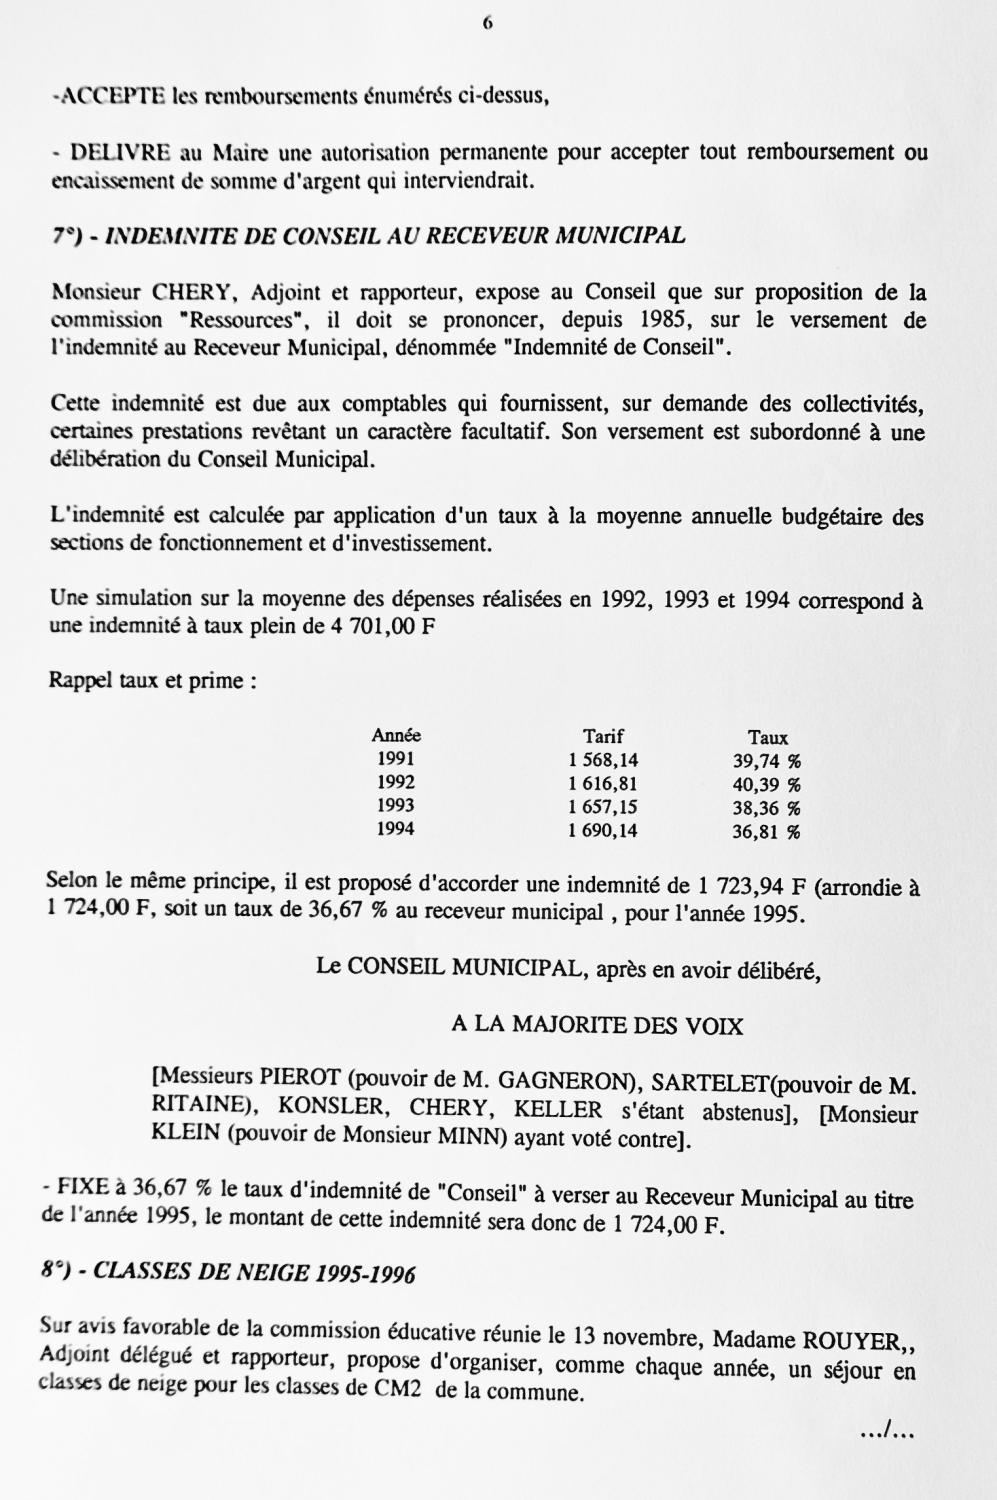 Feuillet_053B_1994-1996.jpg